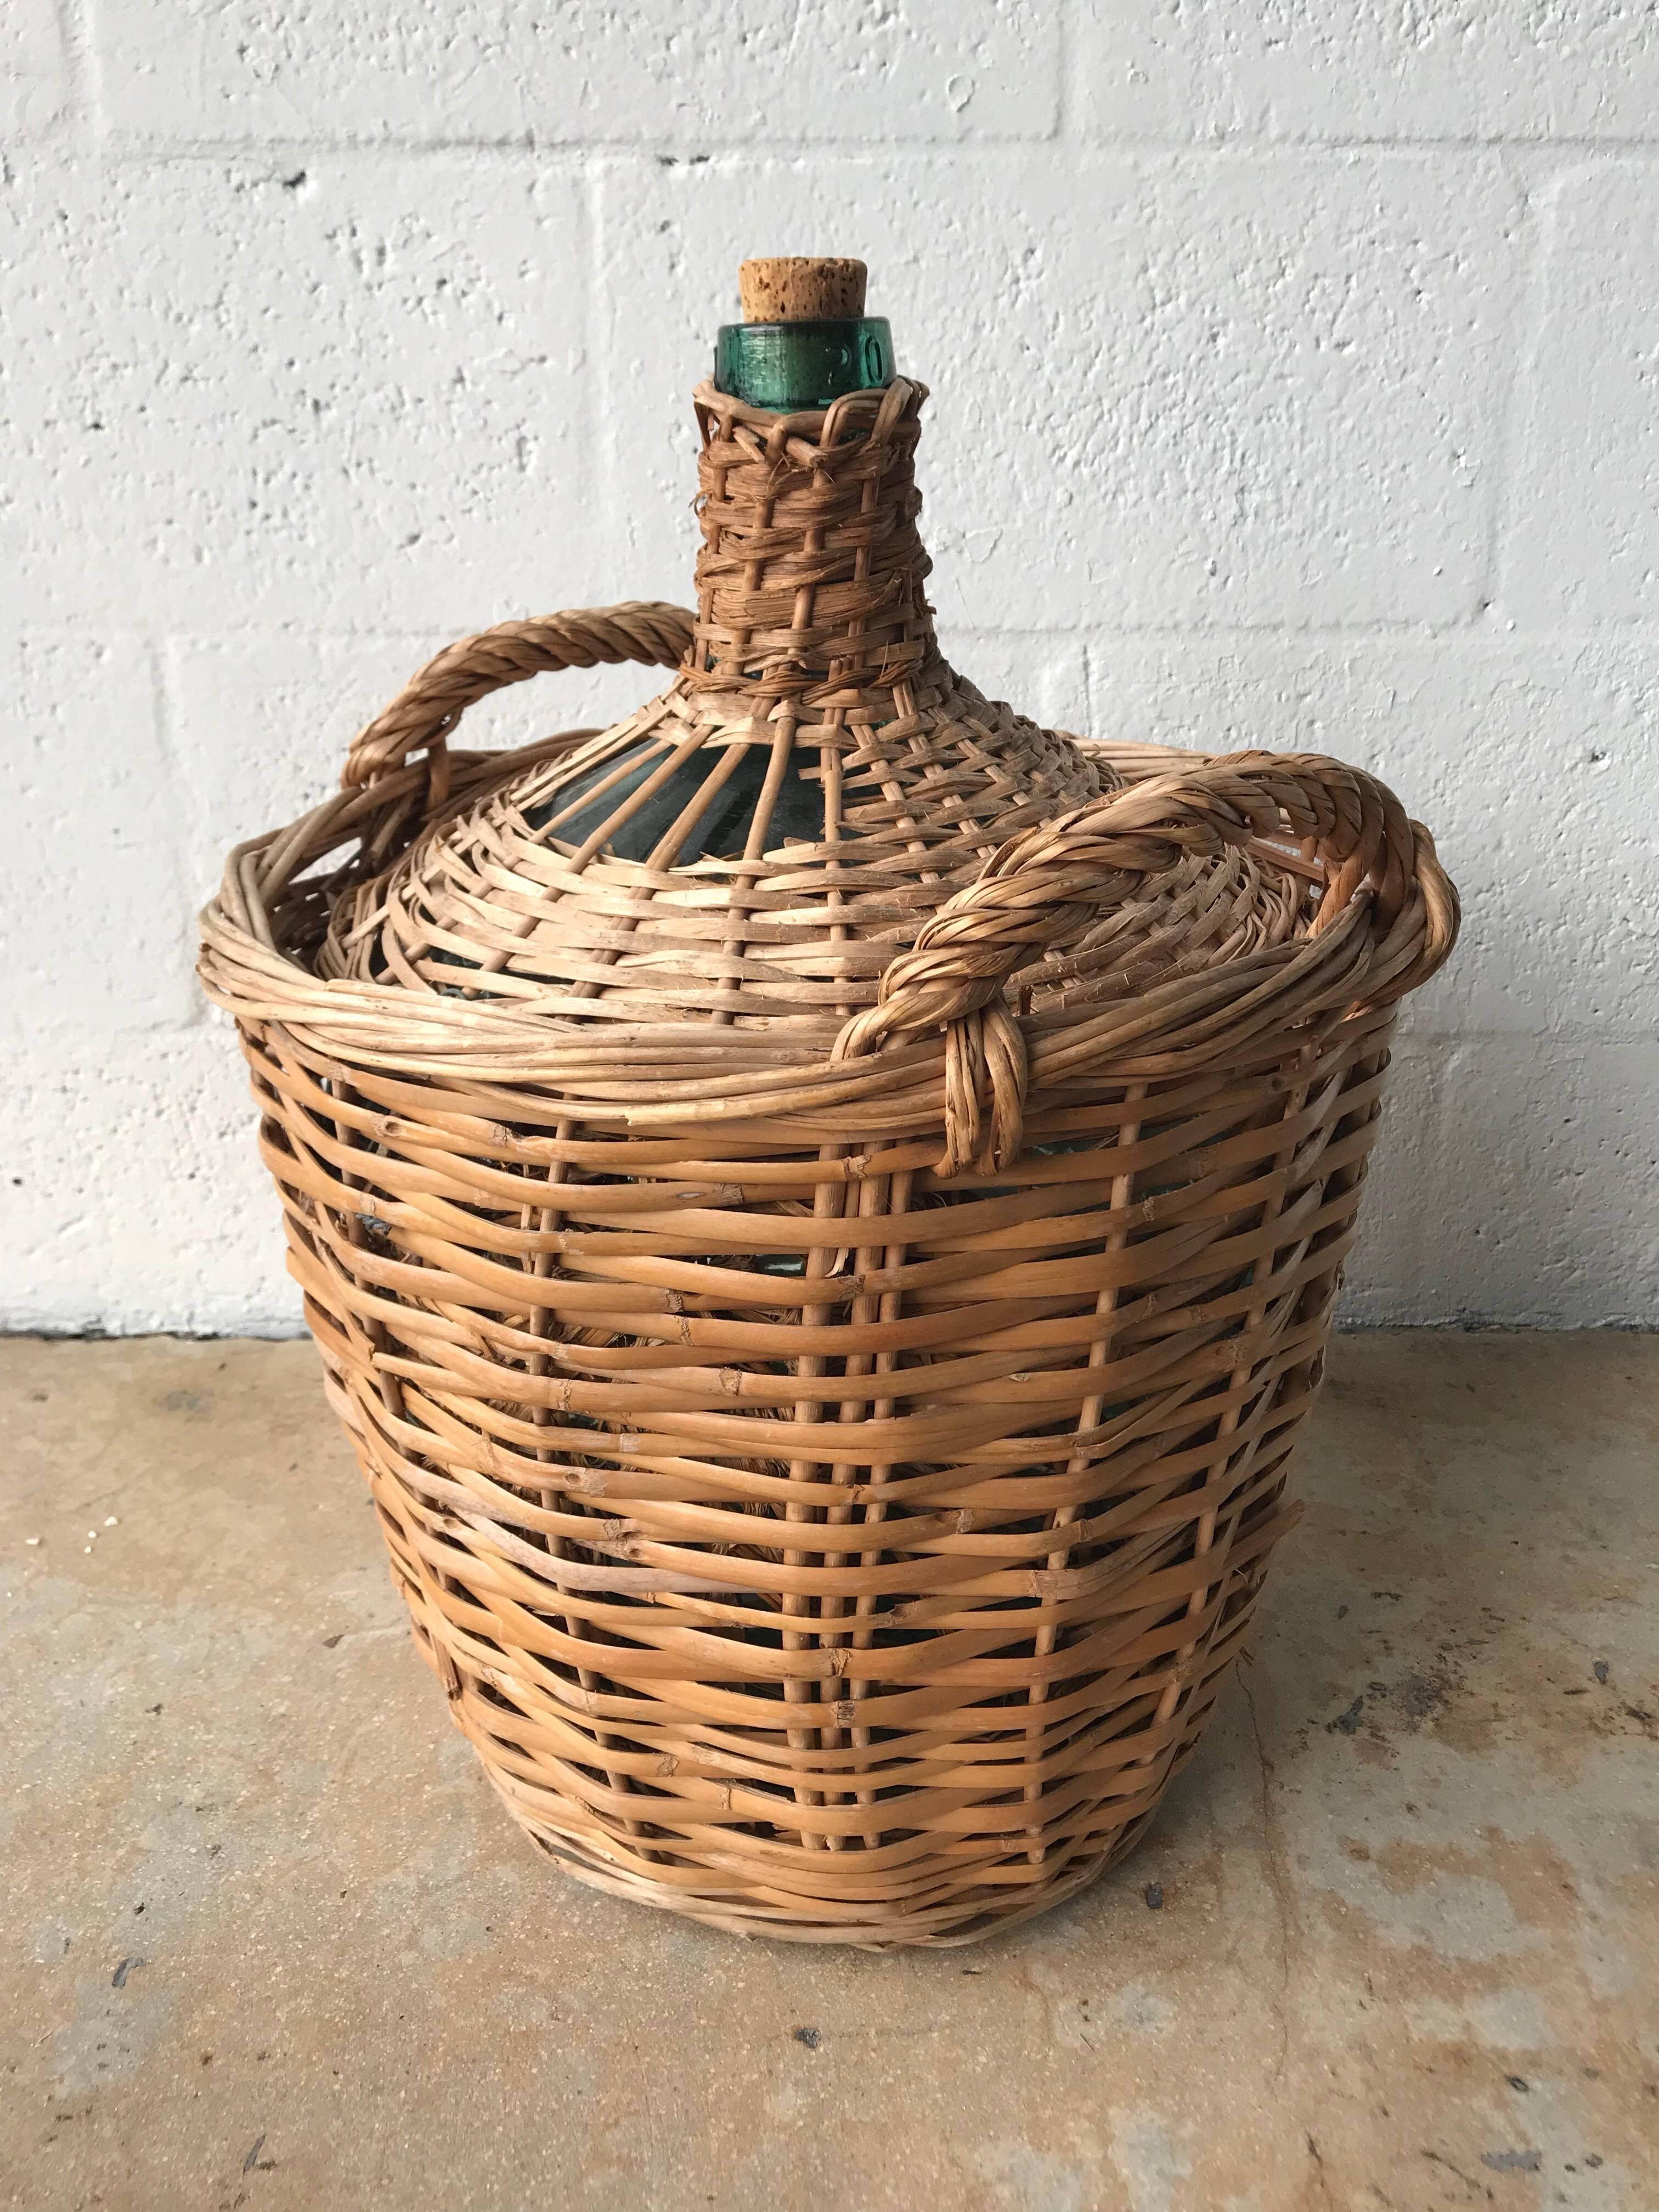 Midcentury 20 liter French wicker basket demijohn bottle by Viresa, France, circa 1950s.